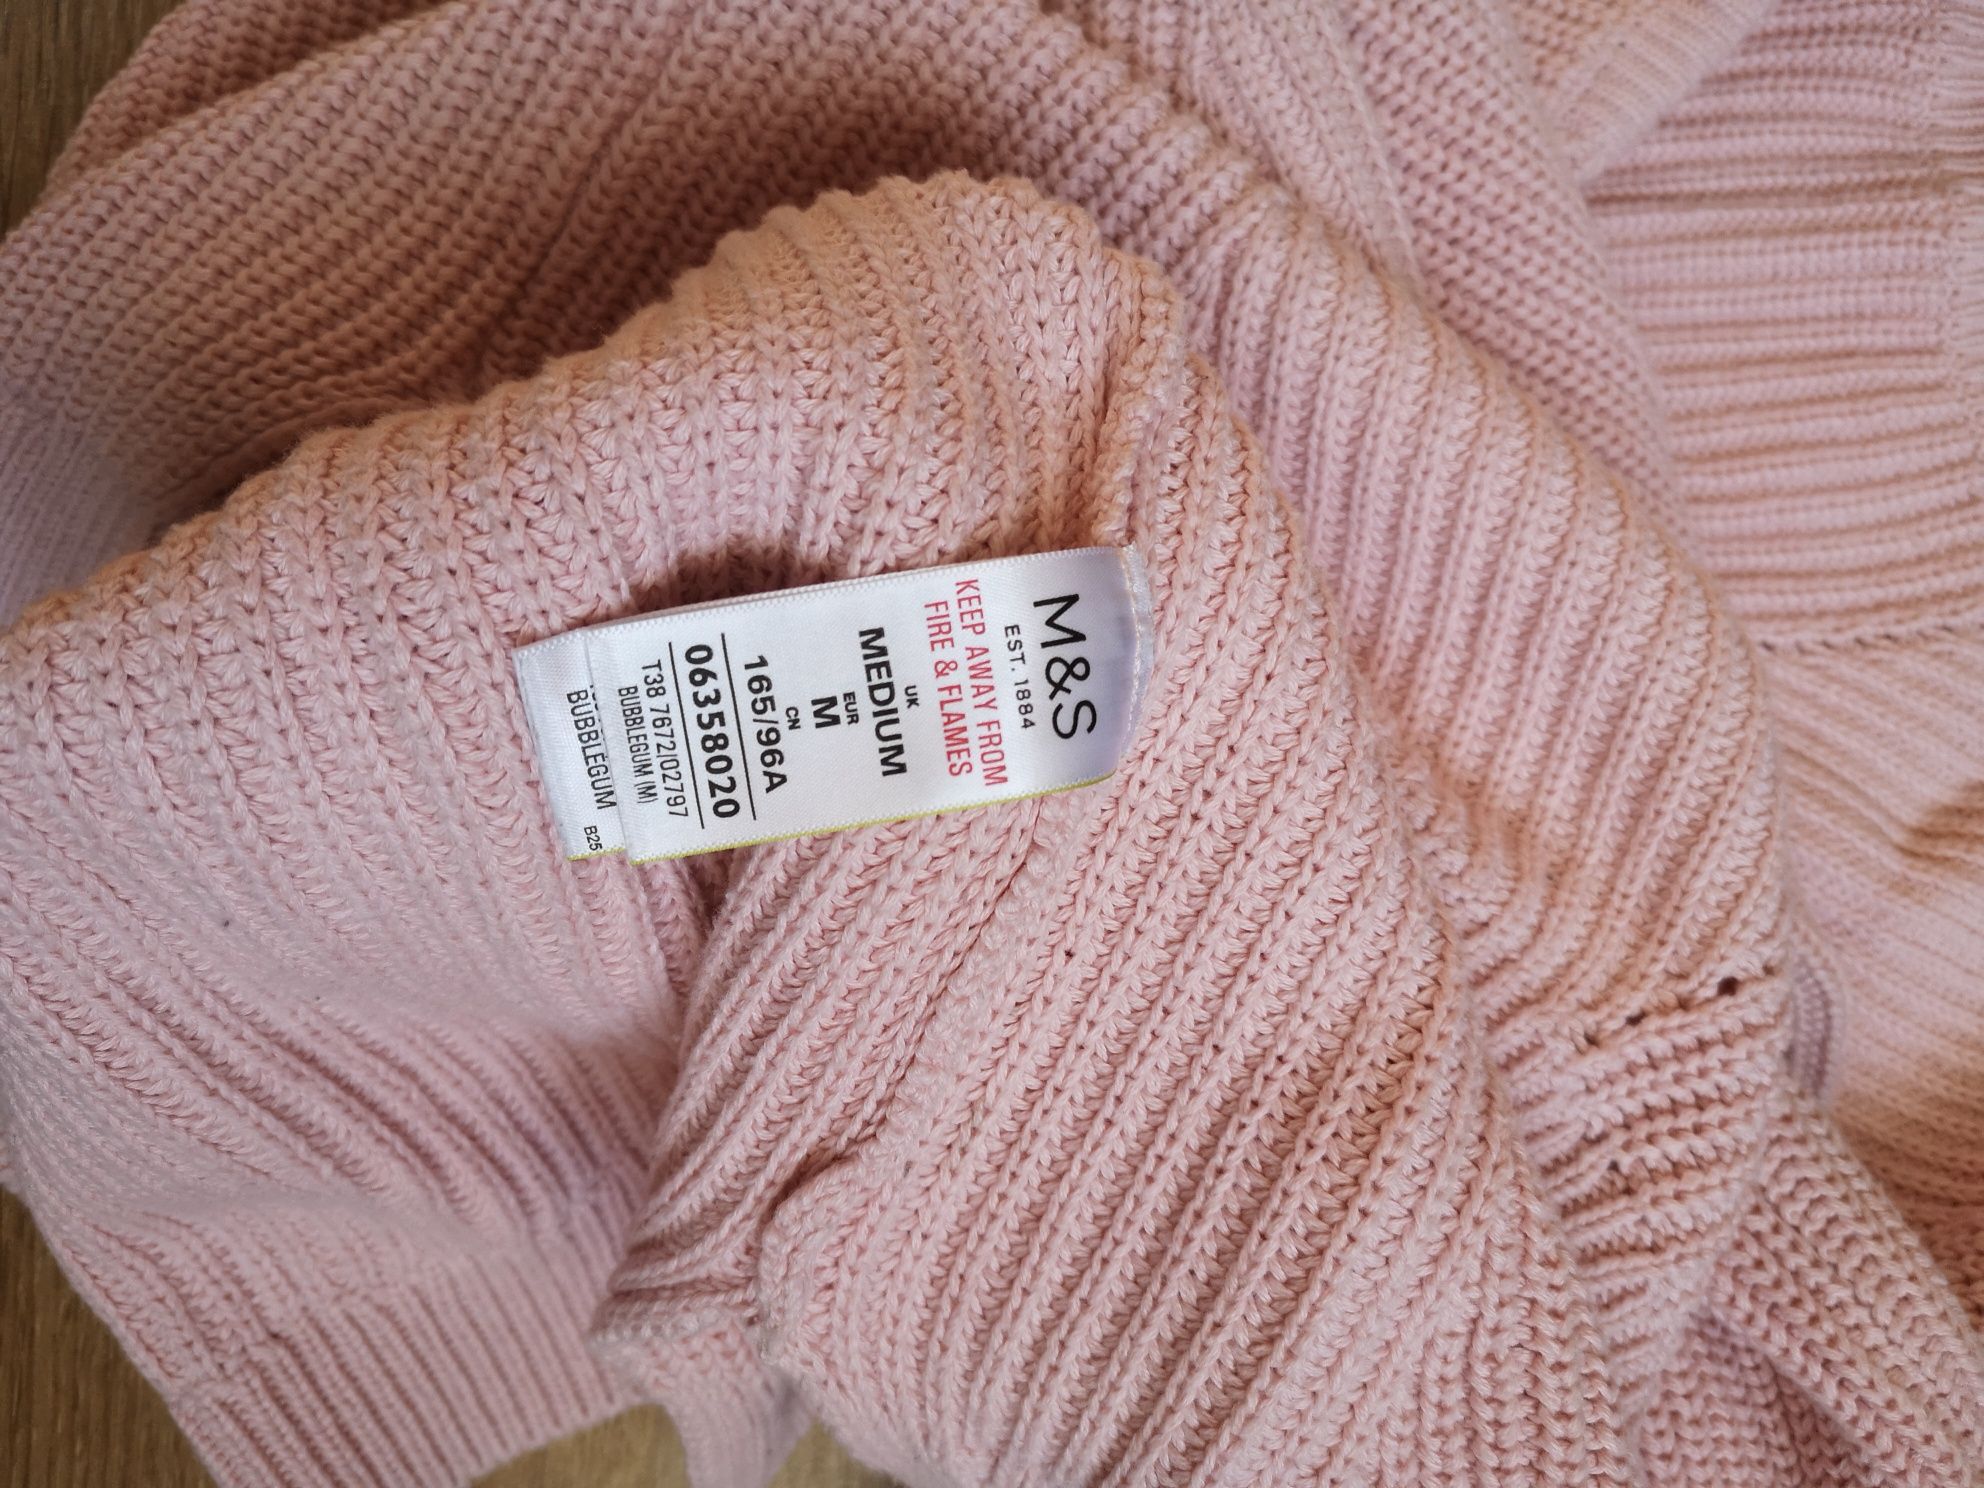 Sweter bawełniany, pudrowy róż, rozmiar M, Marks & Spencer